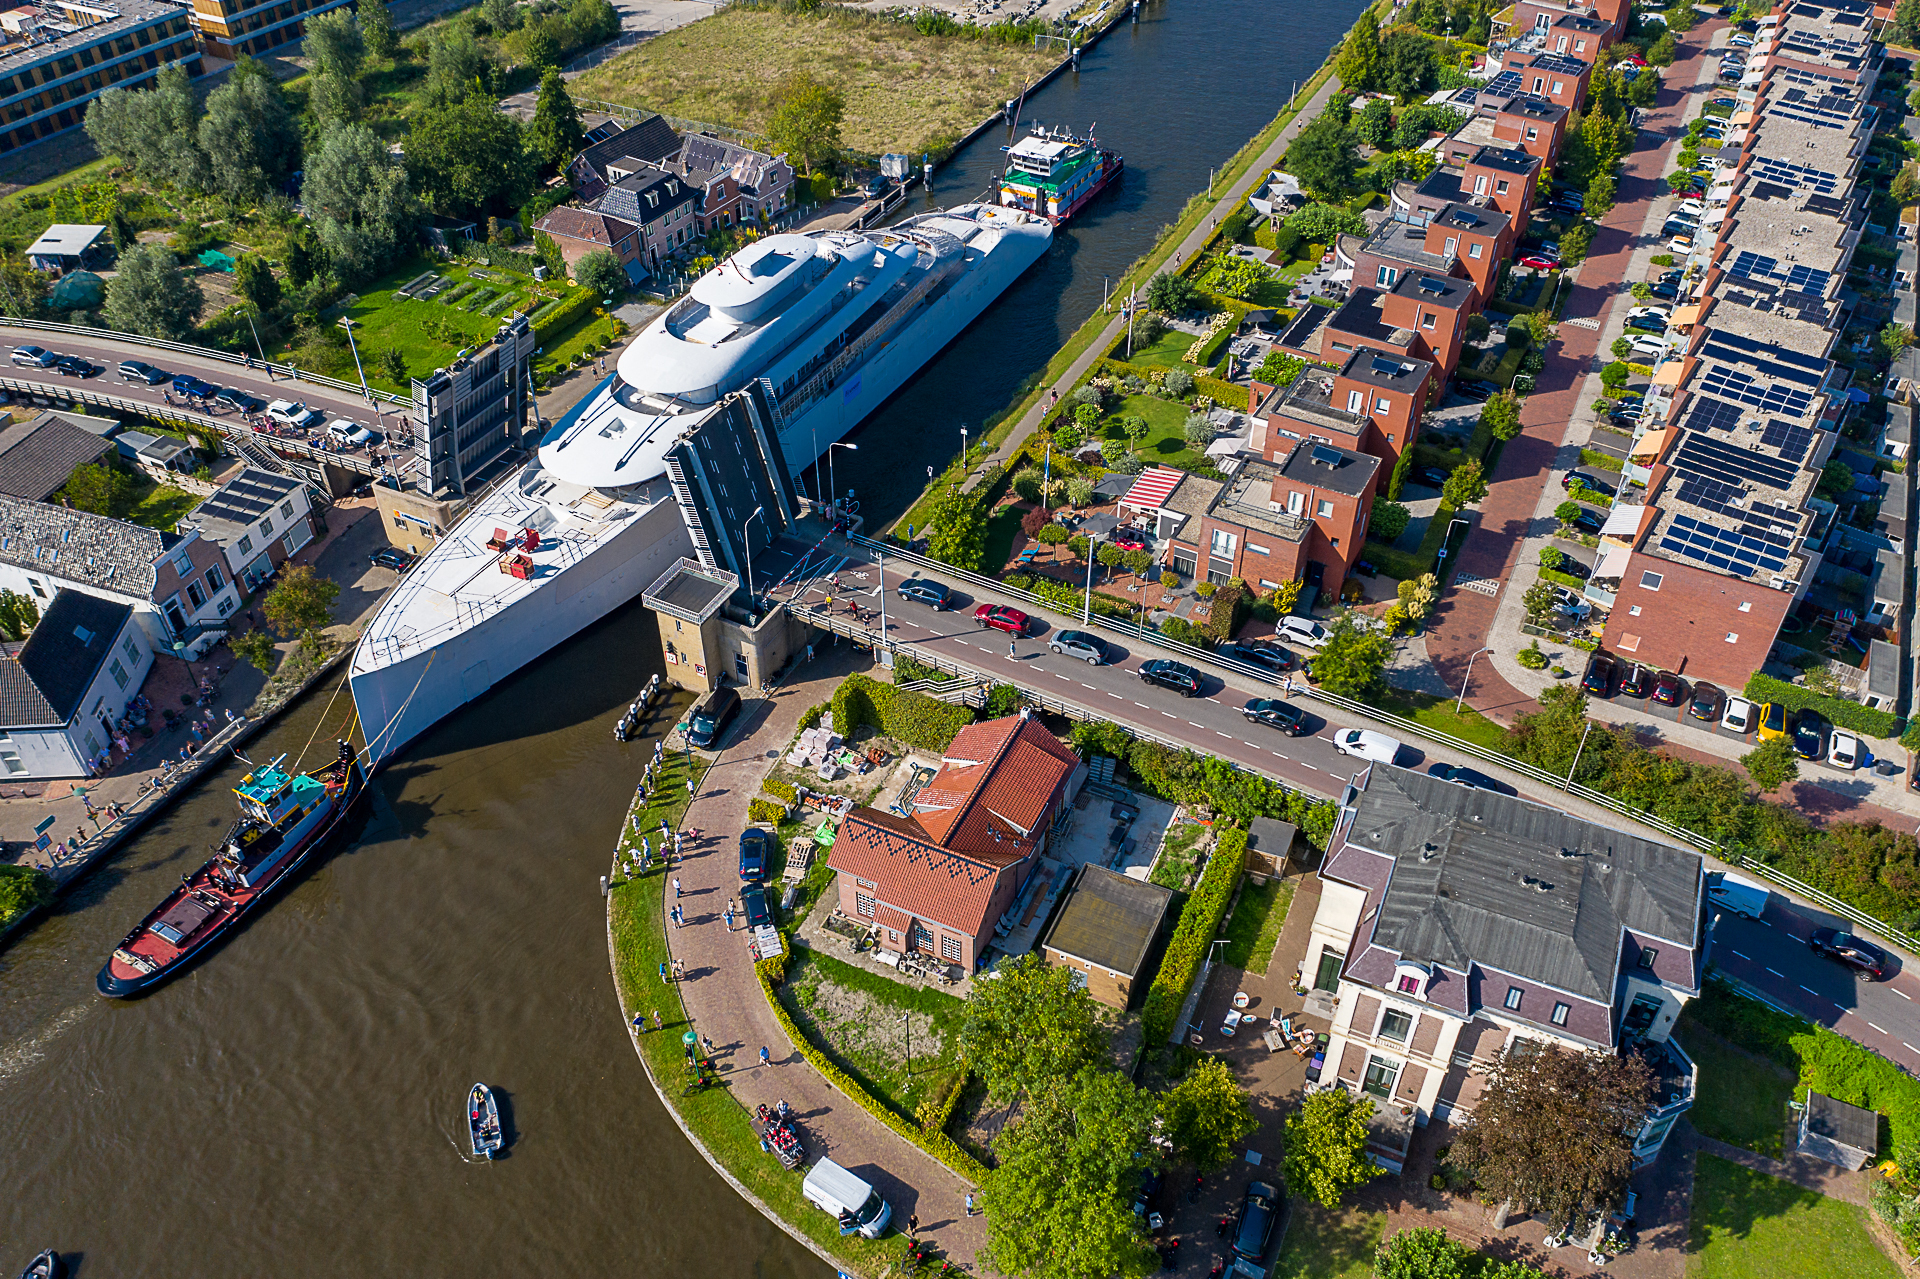 Het jacht is met honderd meter een van de grootste schepen die ooit door de Oude Rijn is gevaren.